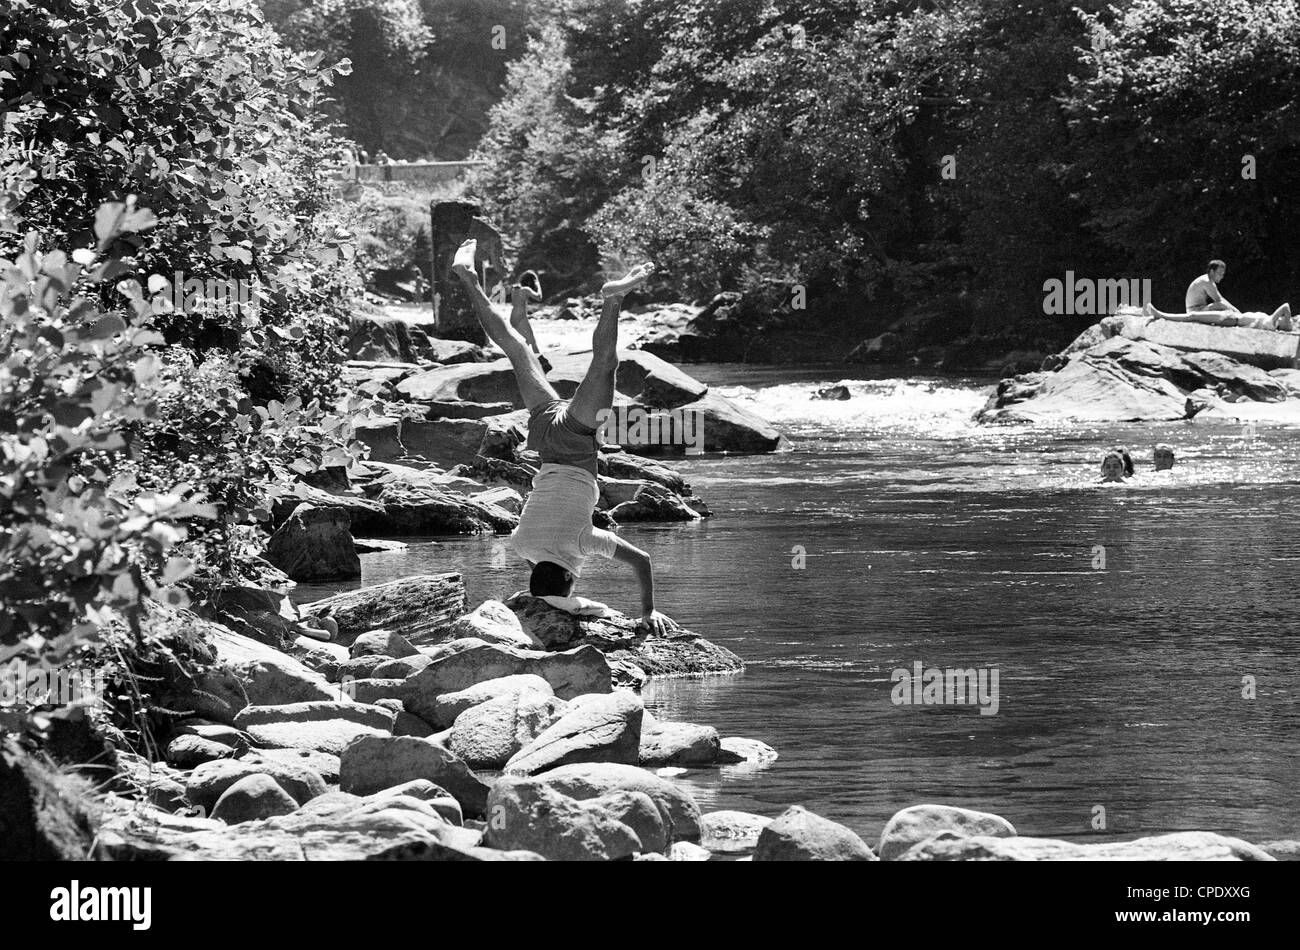 Mann, der Yoga-Handstand auf Felsen am Fluss Salat bei Seix in der Midi Pyrénées France 1990 macht. Kopfstand Yoga Stretch Position Klasse im Freien Französisch Stockfoto